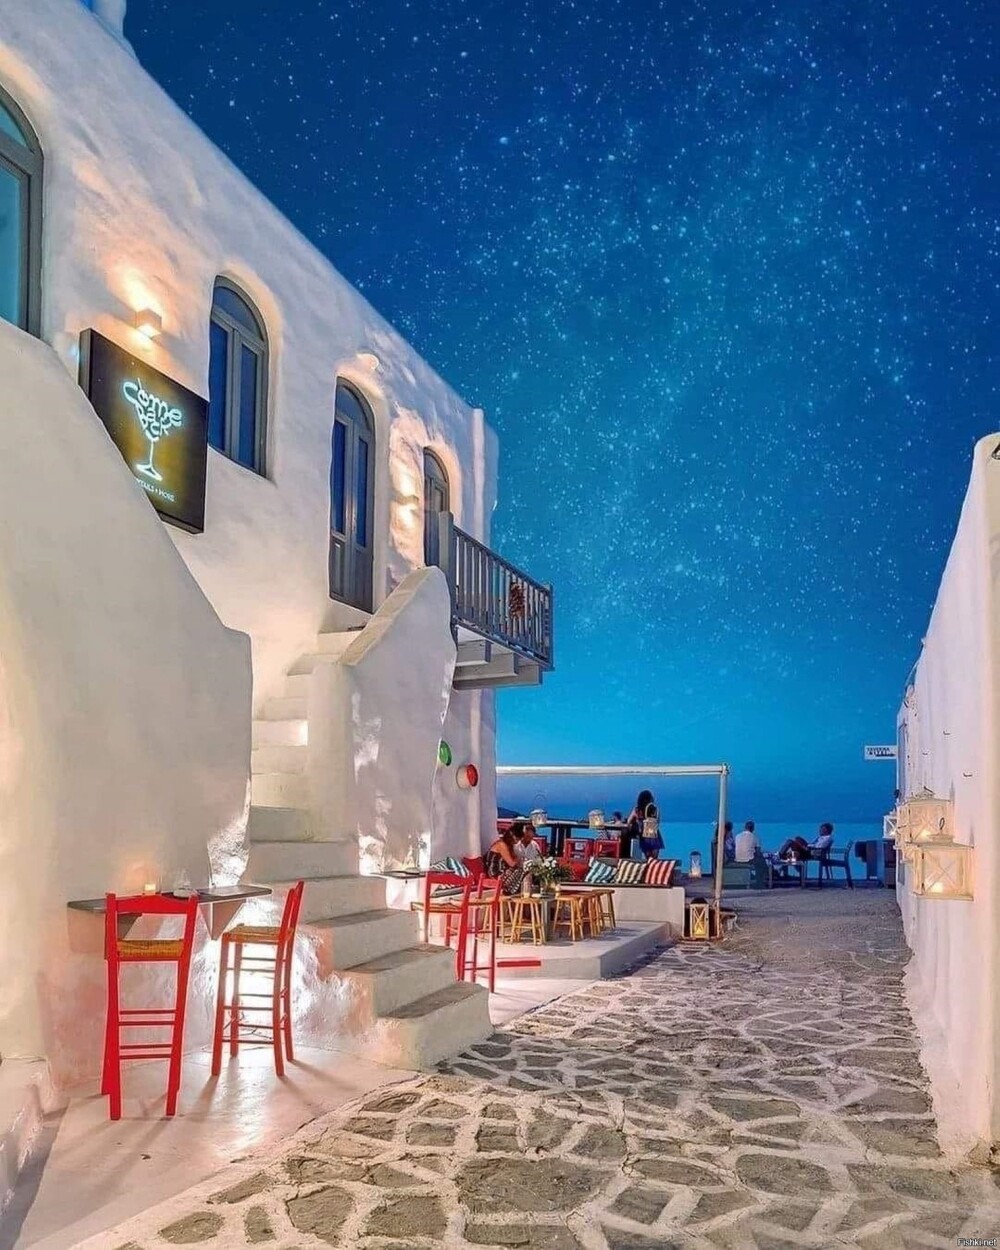 Звёздное небо на греческом острове Парос в южной части Эгейского моря